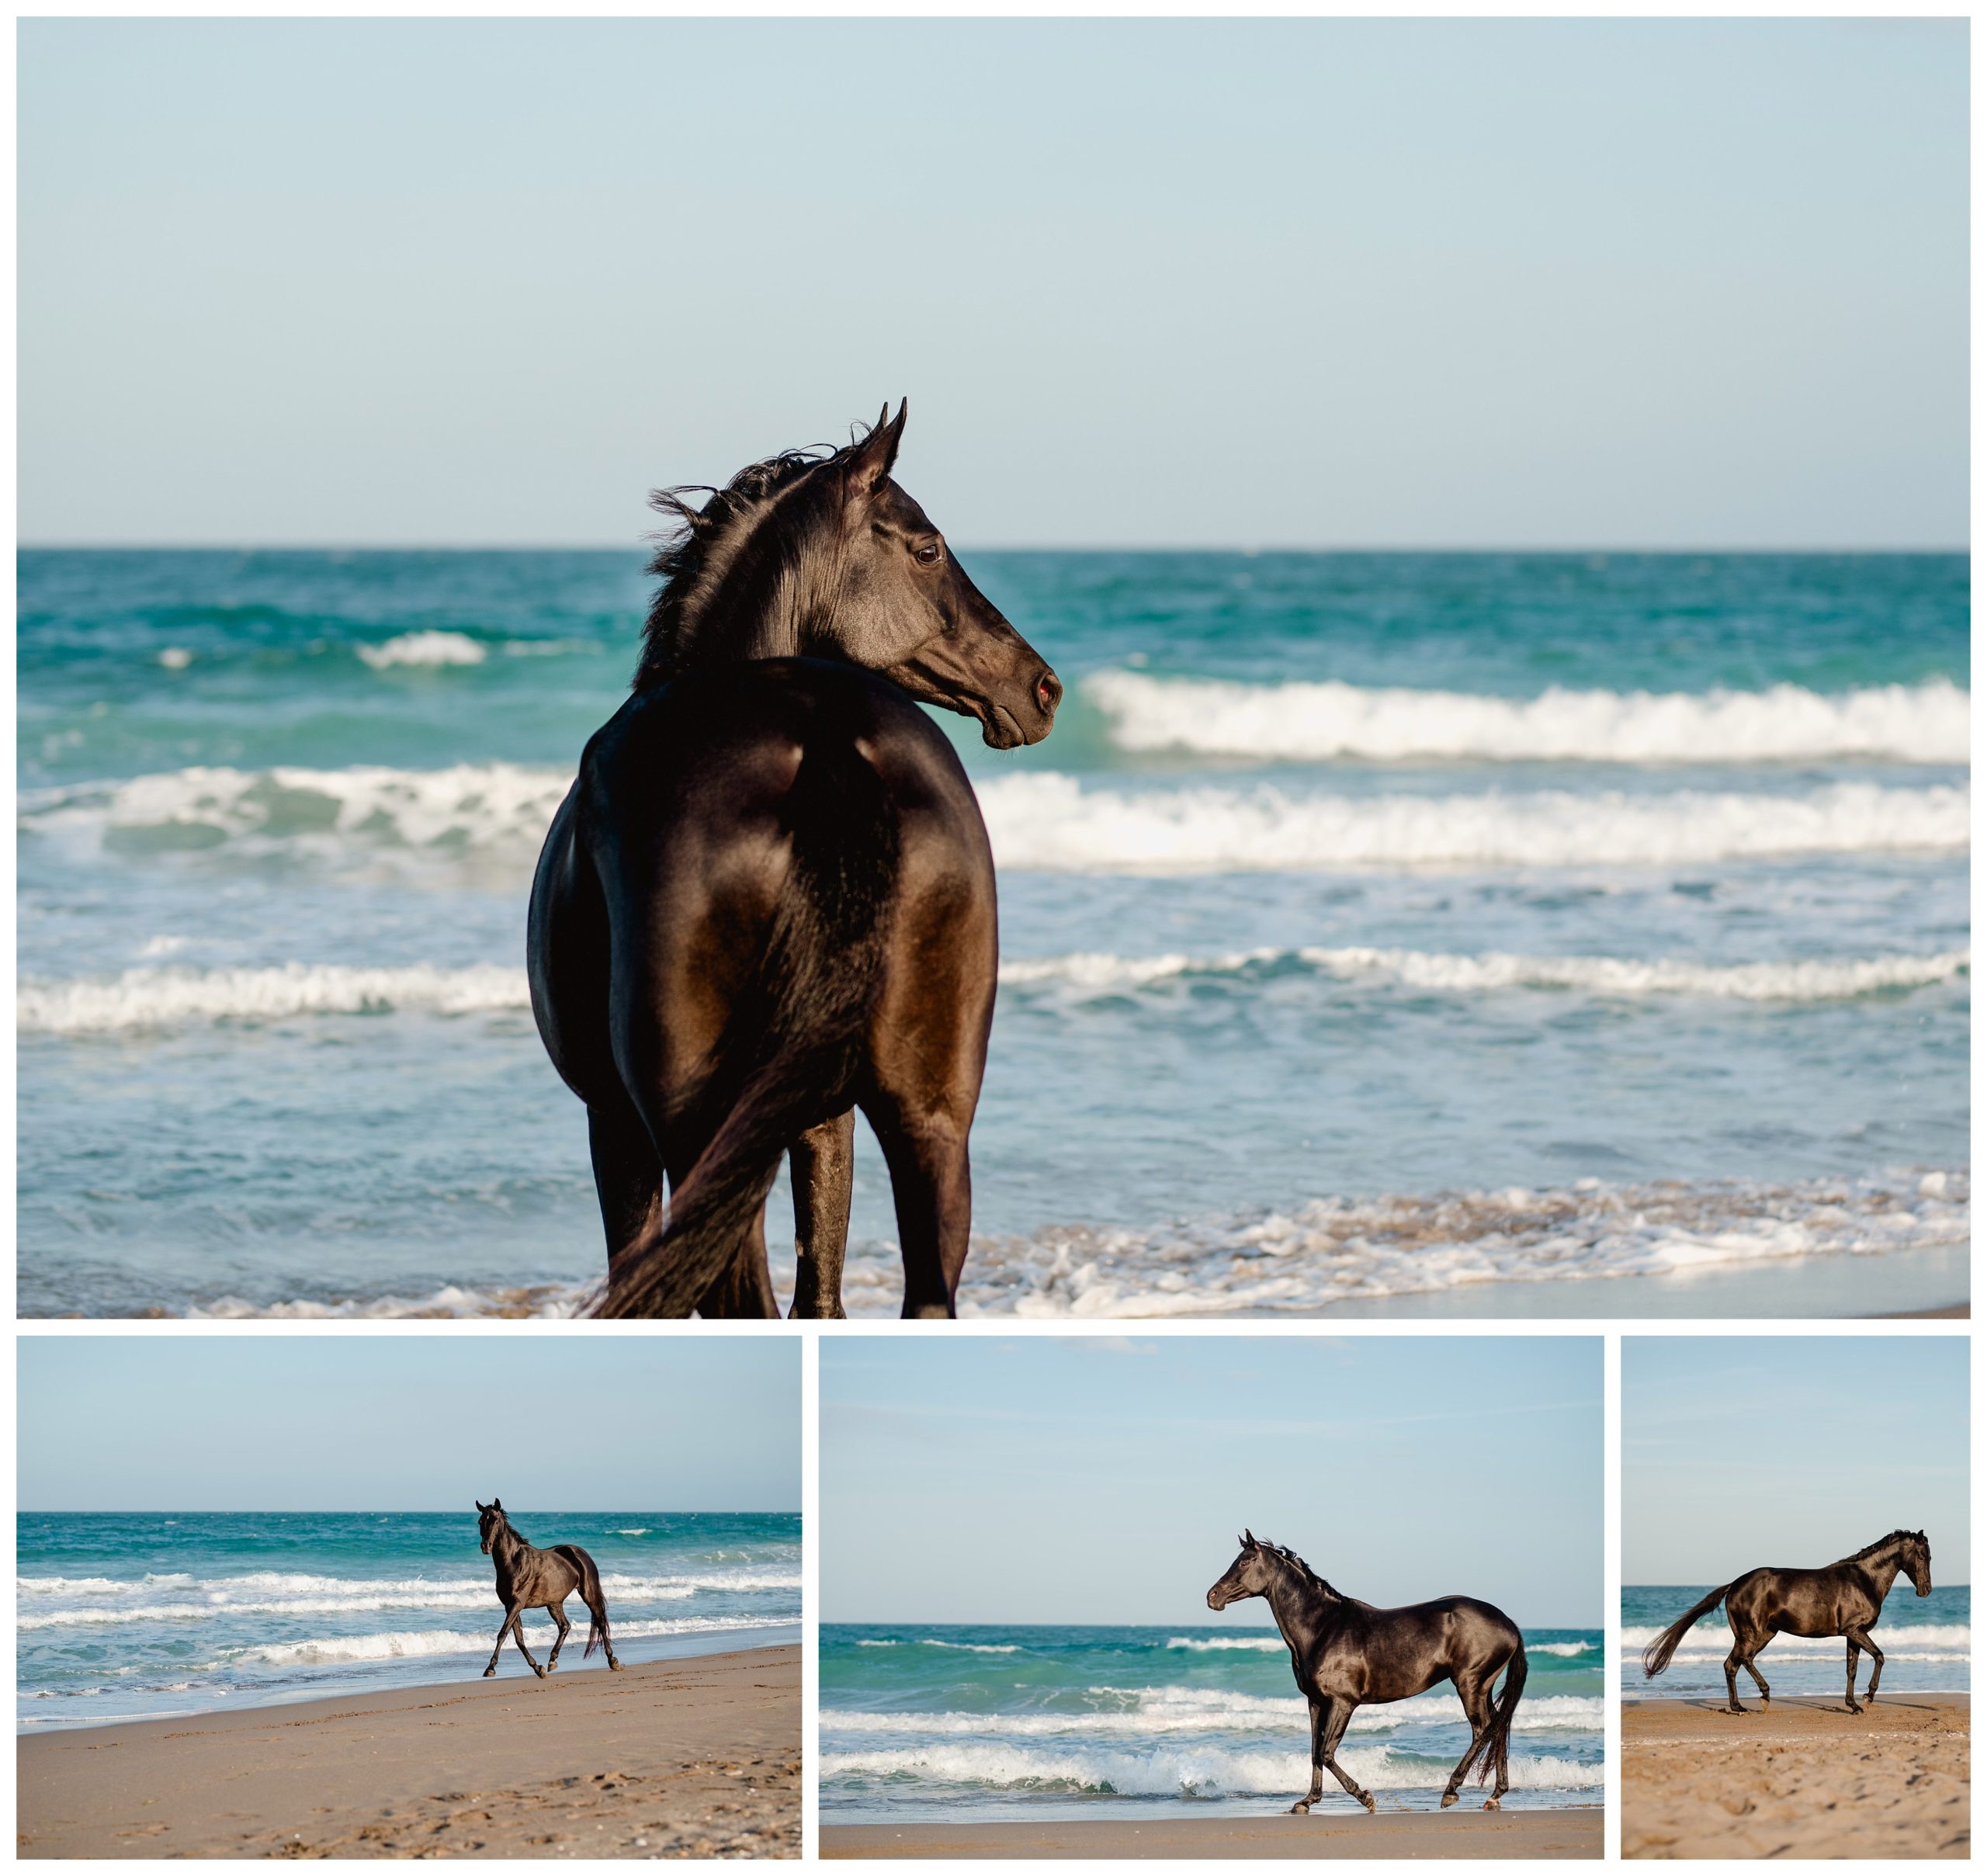 Photos of a horse on the beach on the east coast of Florida.